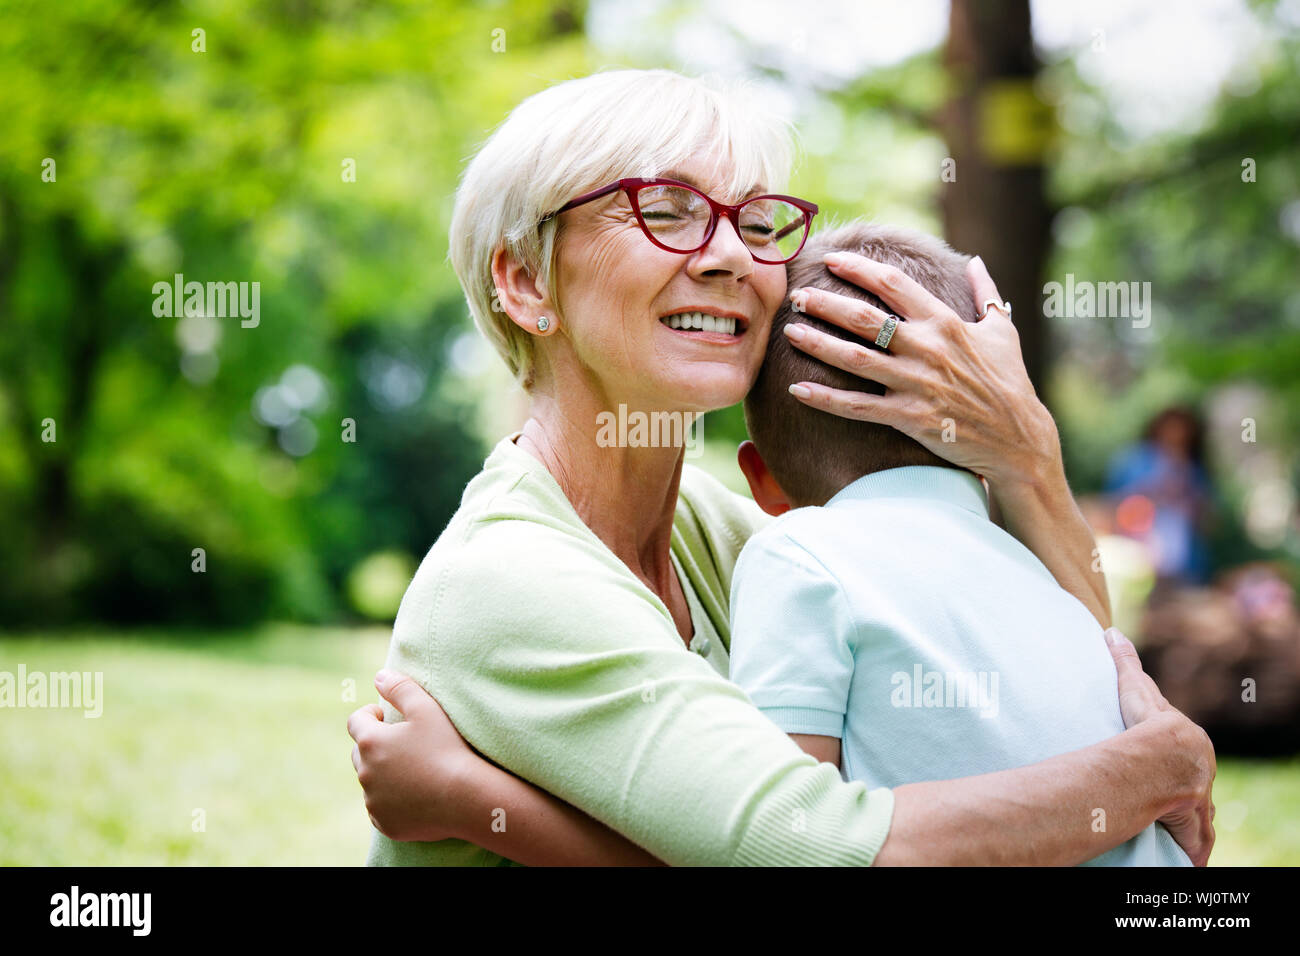 Glückliche Oma mit Enkel, die in einem Park im Freien Stockfoto